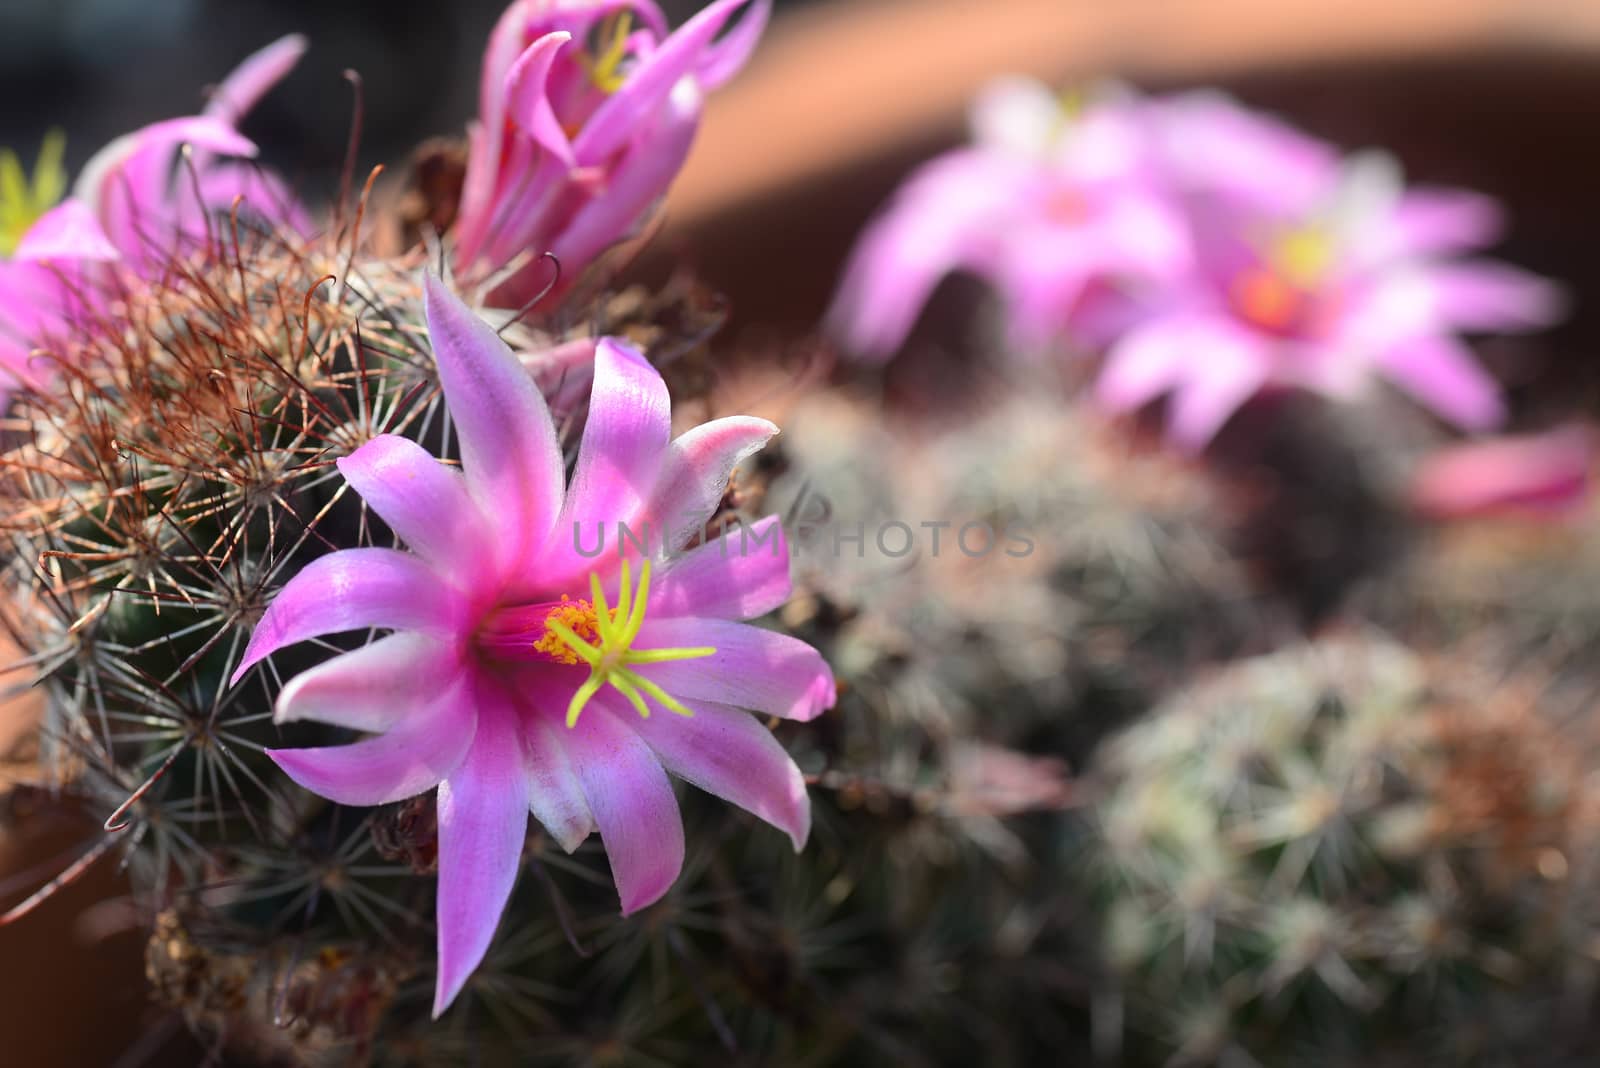 Mammillaria mazatlanensis cactus flower by ideation90